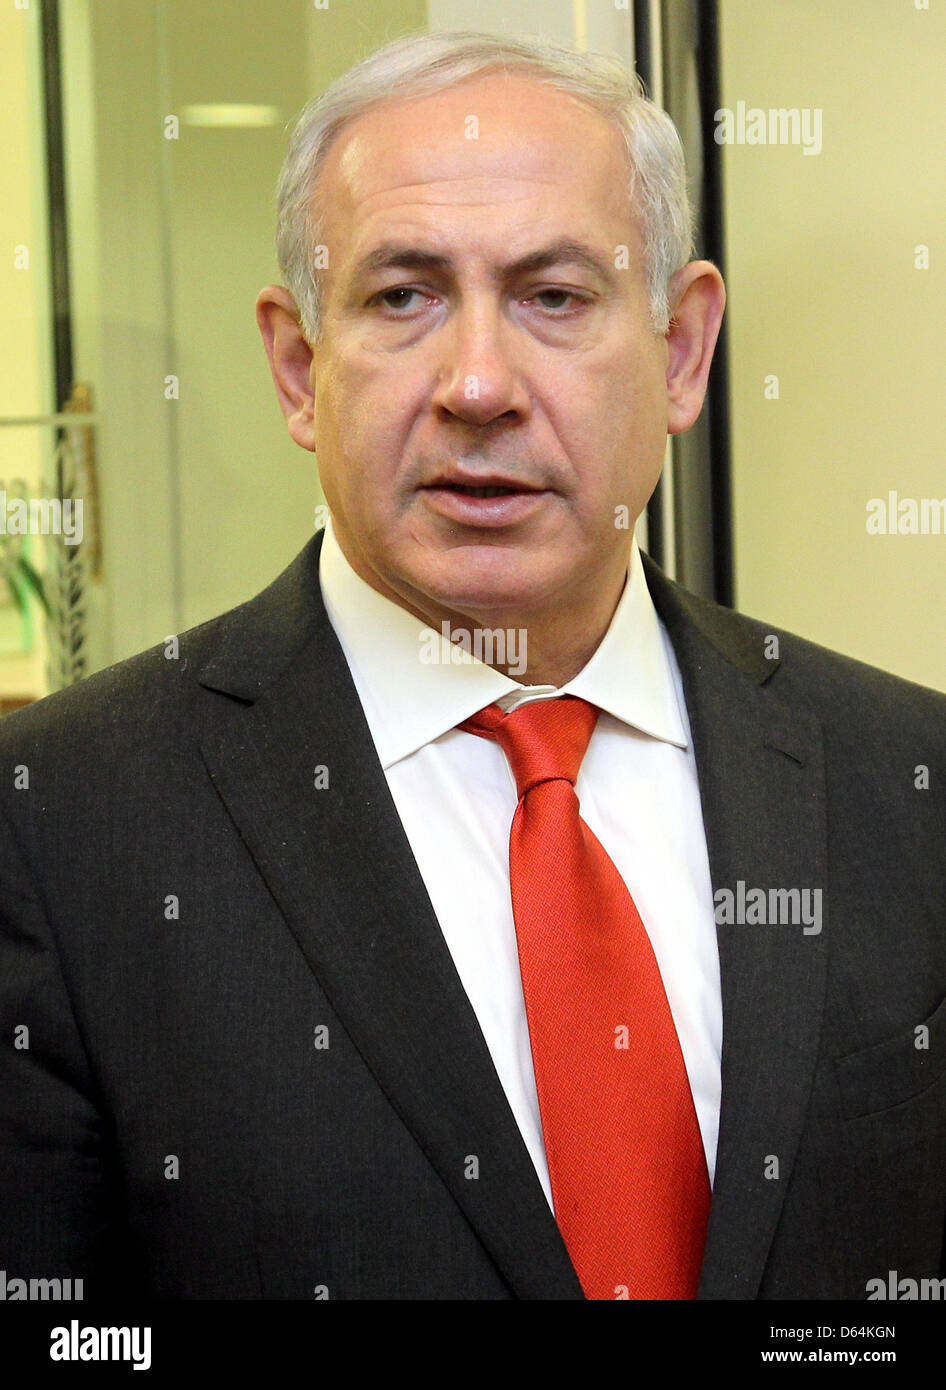 Il primo ministro di Israele Benjamin Netanyahu attende l'arrivo del Presidente tedesco Gauck a Gerusalemme, Israele, 30 maggio 2012. Il capo dello stato tedesco è in visita di stato in Israele e nei territori palestinesi. Foto: WOLFGANG KUMM Foto Stock